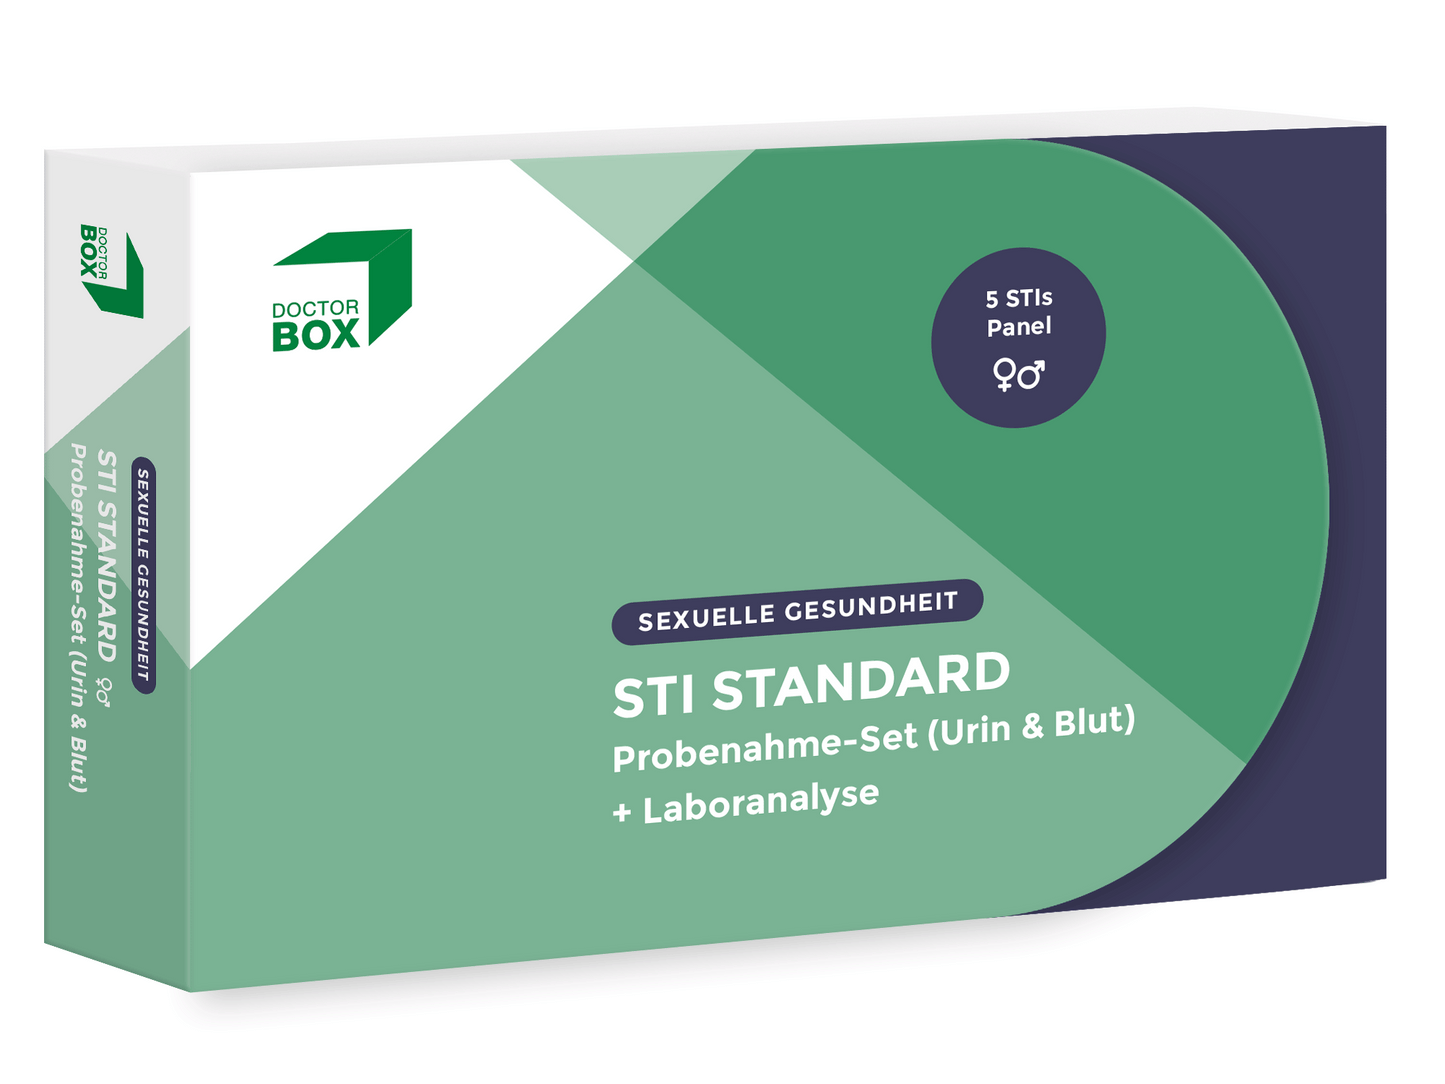 STI Test Standard - Geschlechtskrankheiten-Test